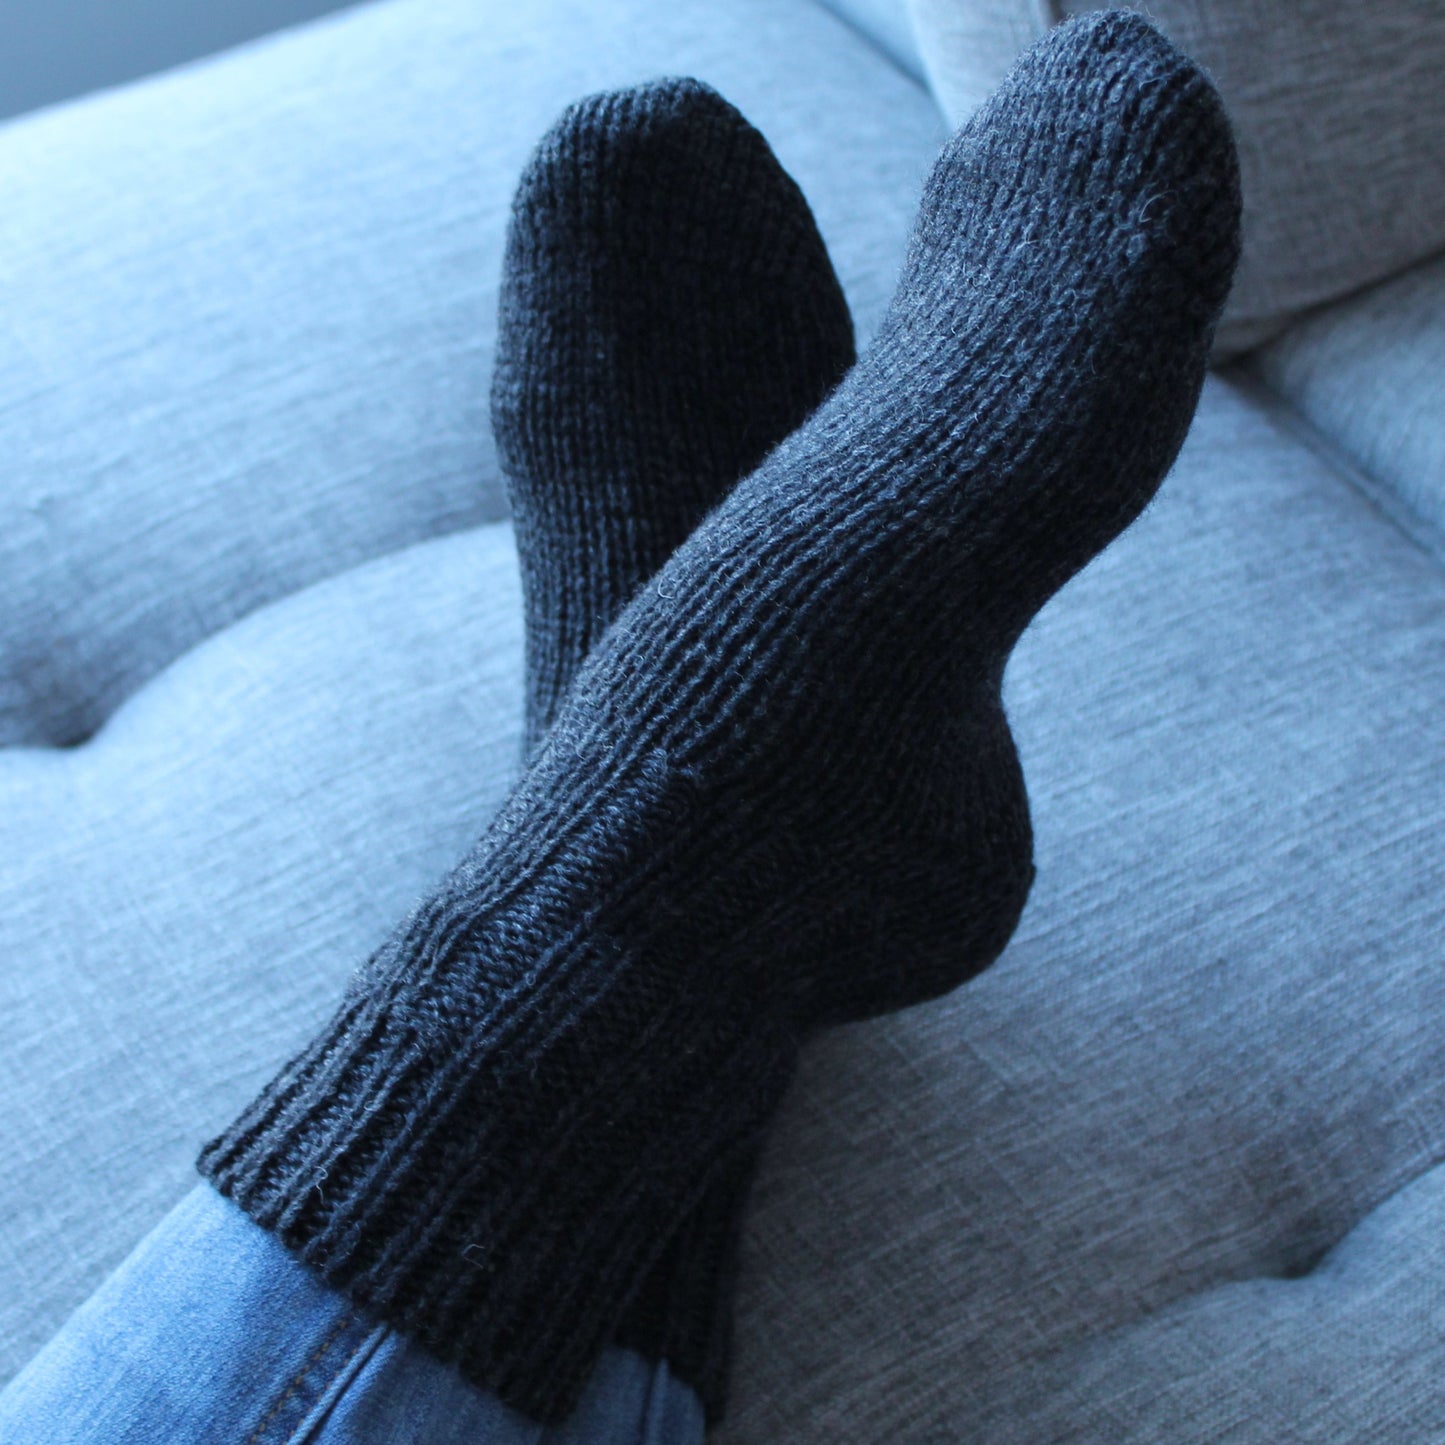 Merino Wool Socks – Best for Cold Feet All Season – Gloves for